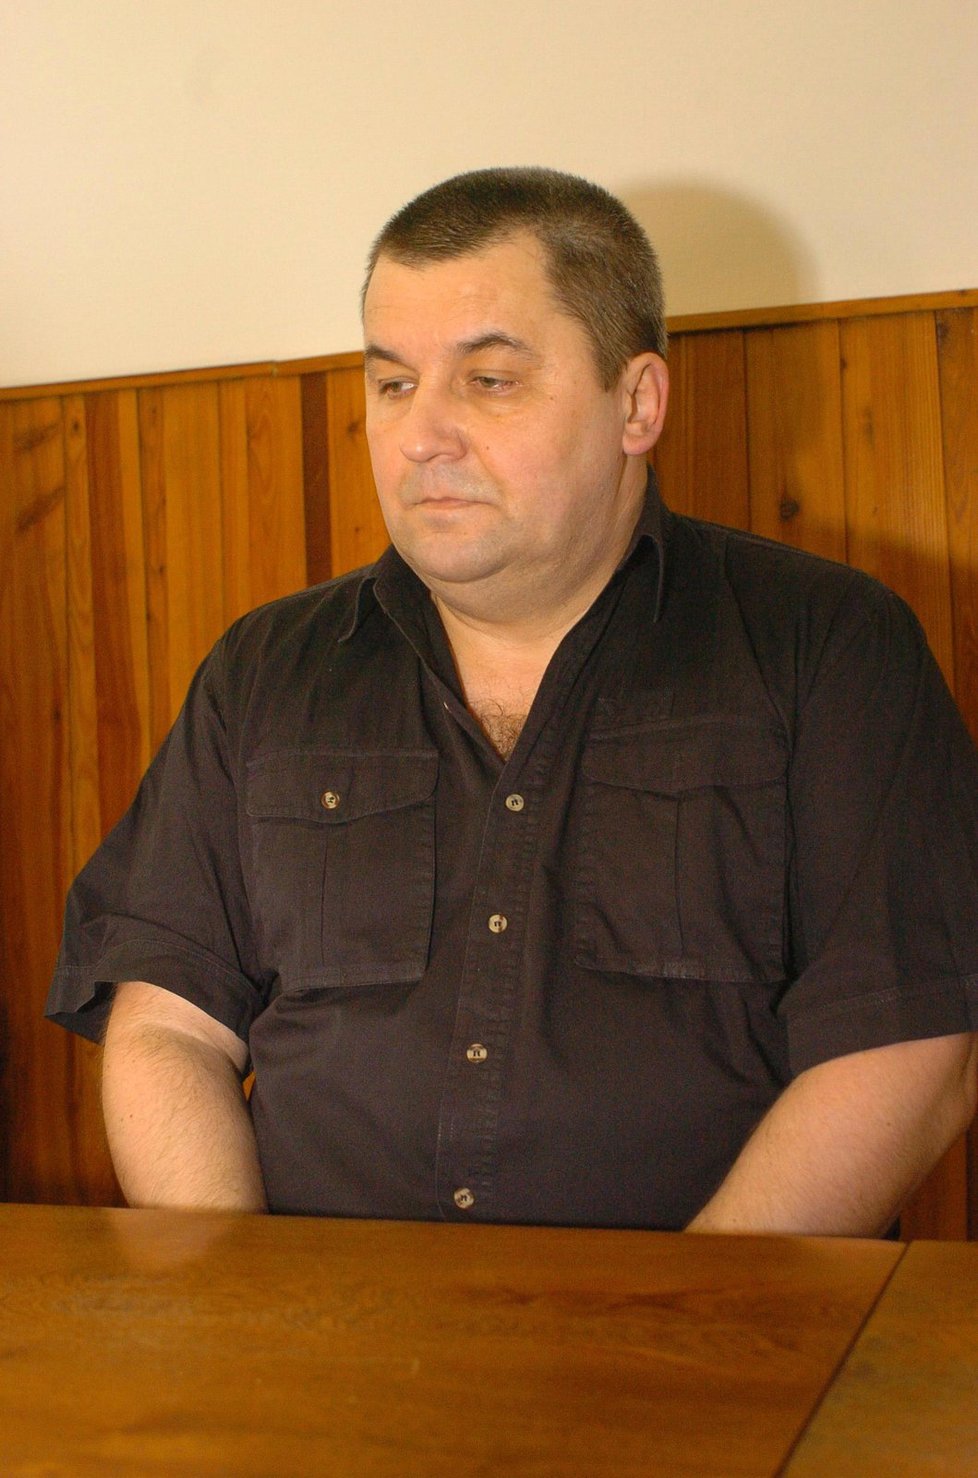 Řidič tramvaje číslo 22 Jiří Panenka dostal od soudu trest odnětí svobody na 4,5 roku.